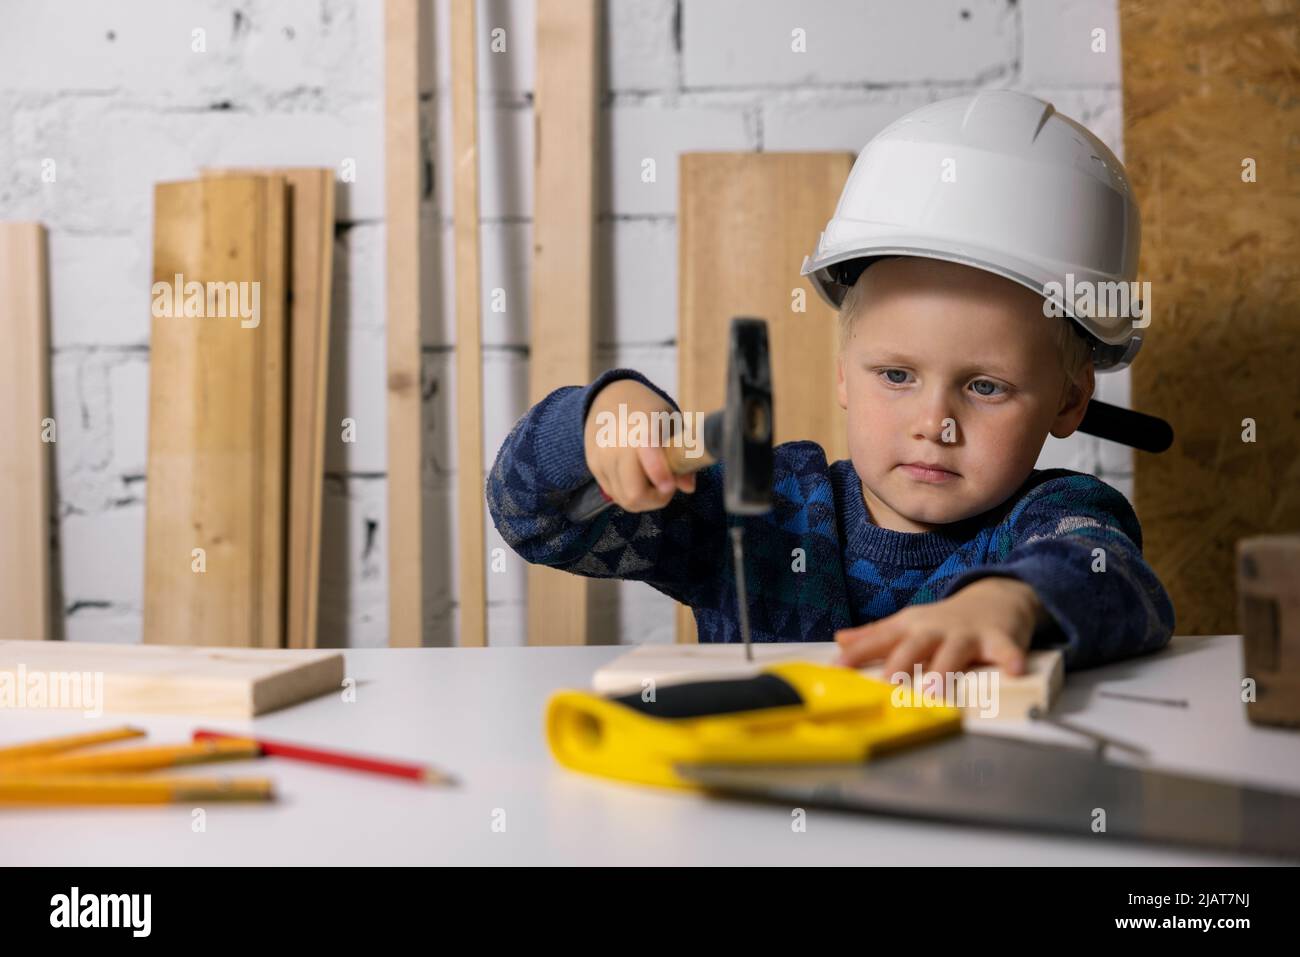 Der kleine Junge mit Helm lernt in der Tischlerwerkstatt, einen Nagel in die Holzdiele zu schlagen Stockfoto